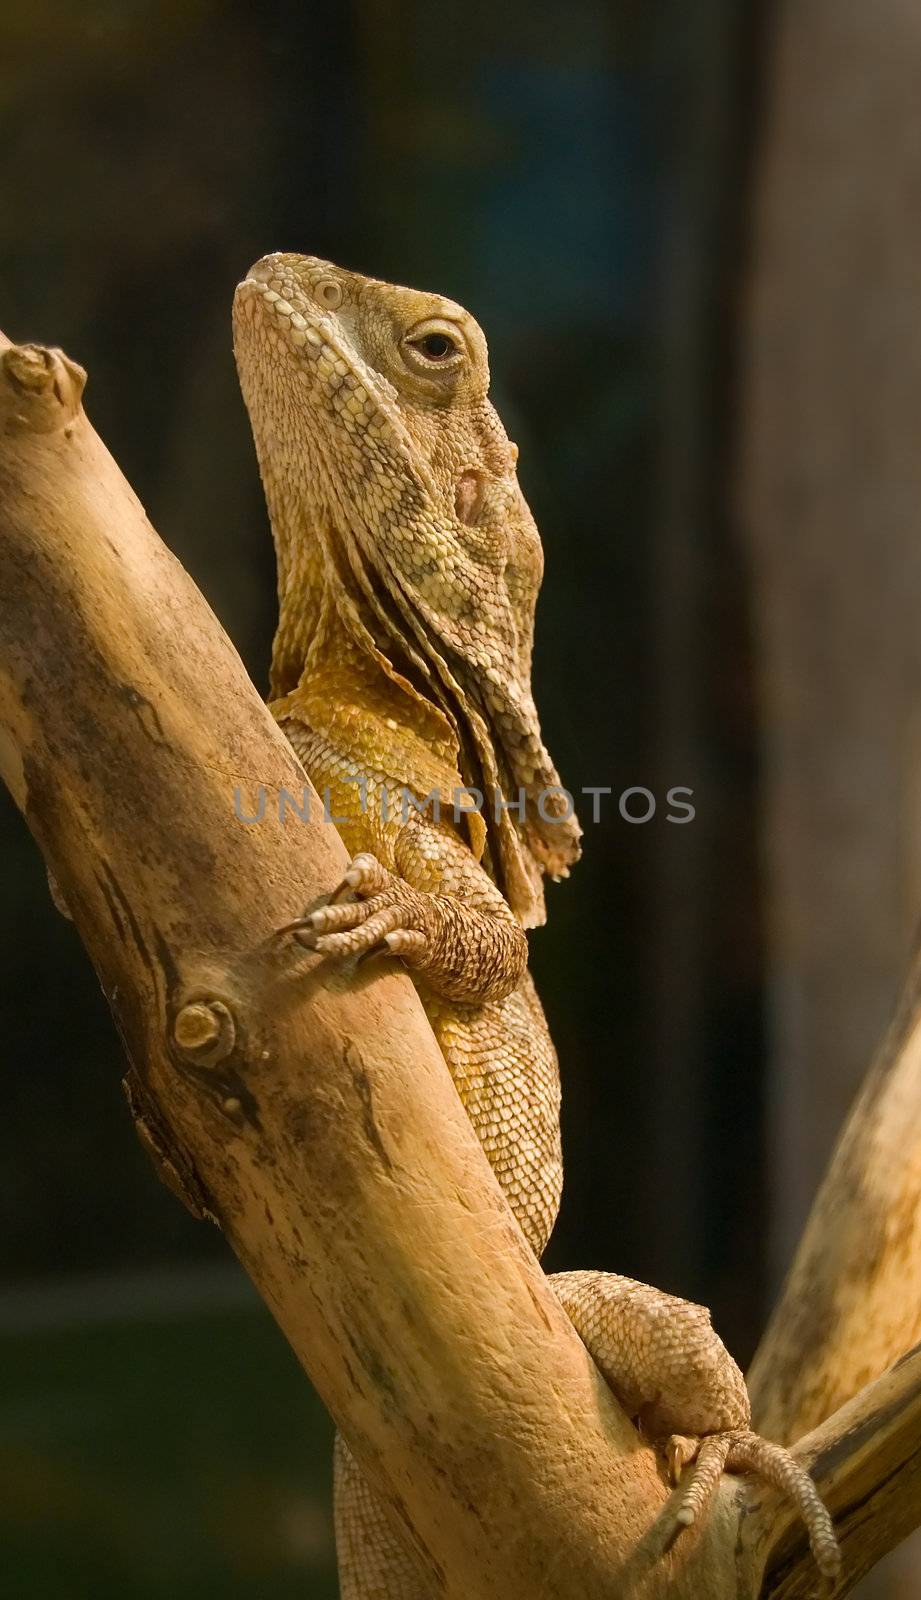 Lizard on a wood. Blurred background. Chlamydosaurus kingii.